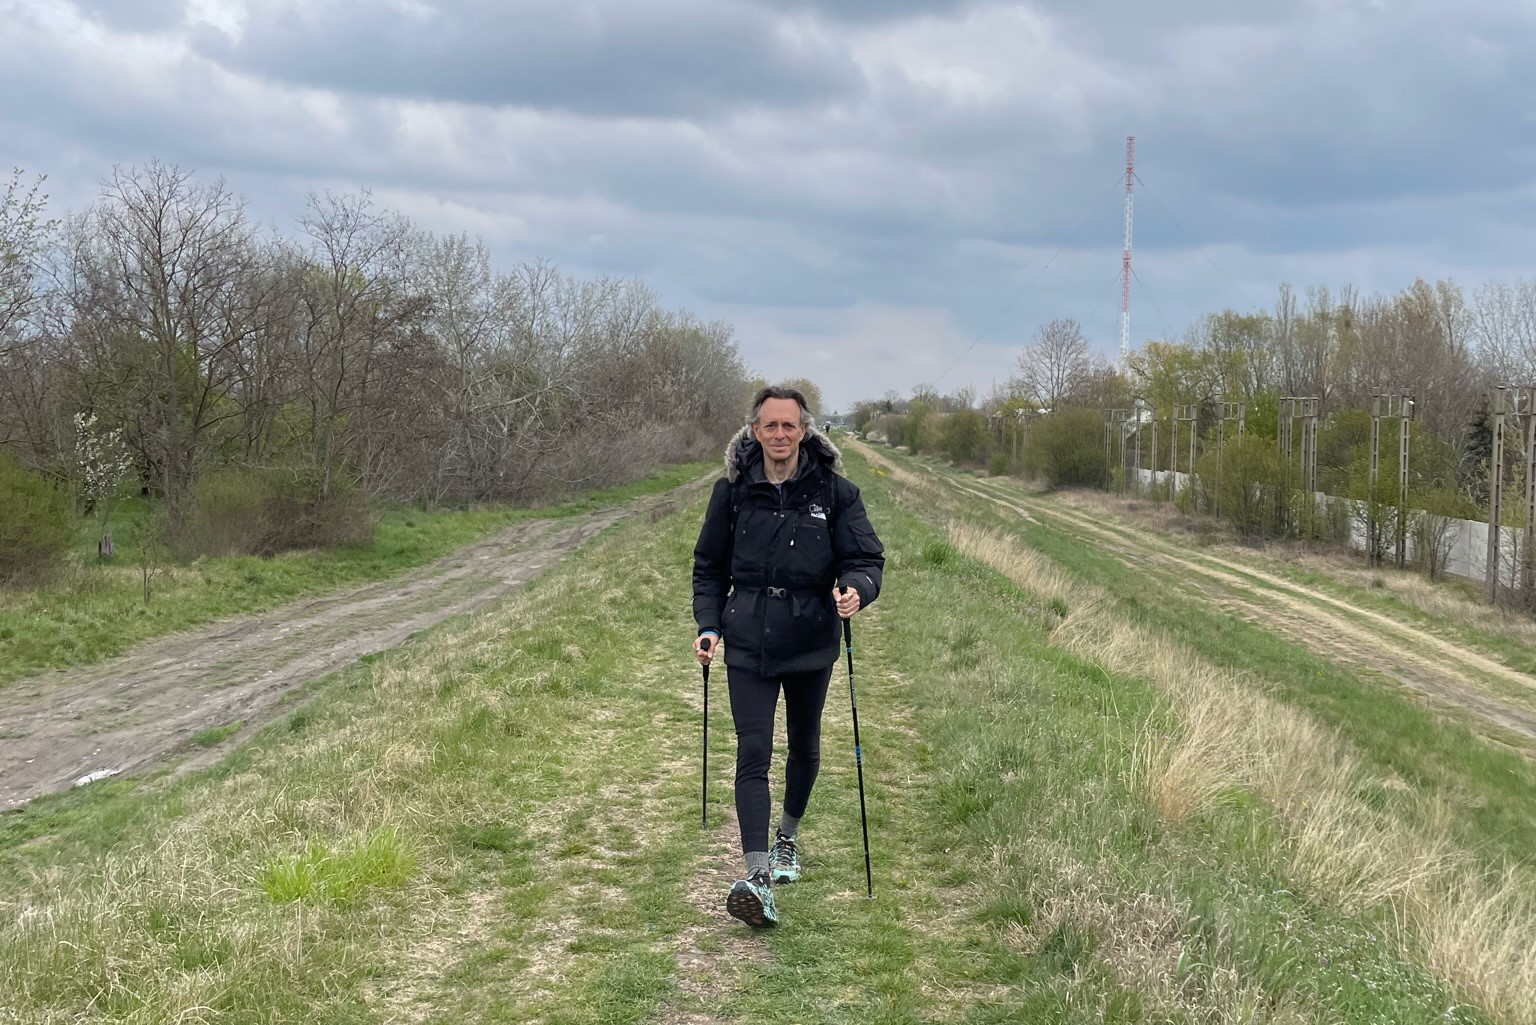 Egy kanadai férfi 4000 kilométert gyalogol, így kampányol a légköri szén kivonásáért